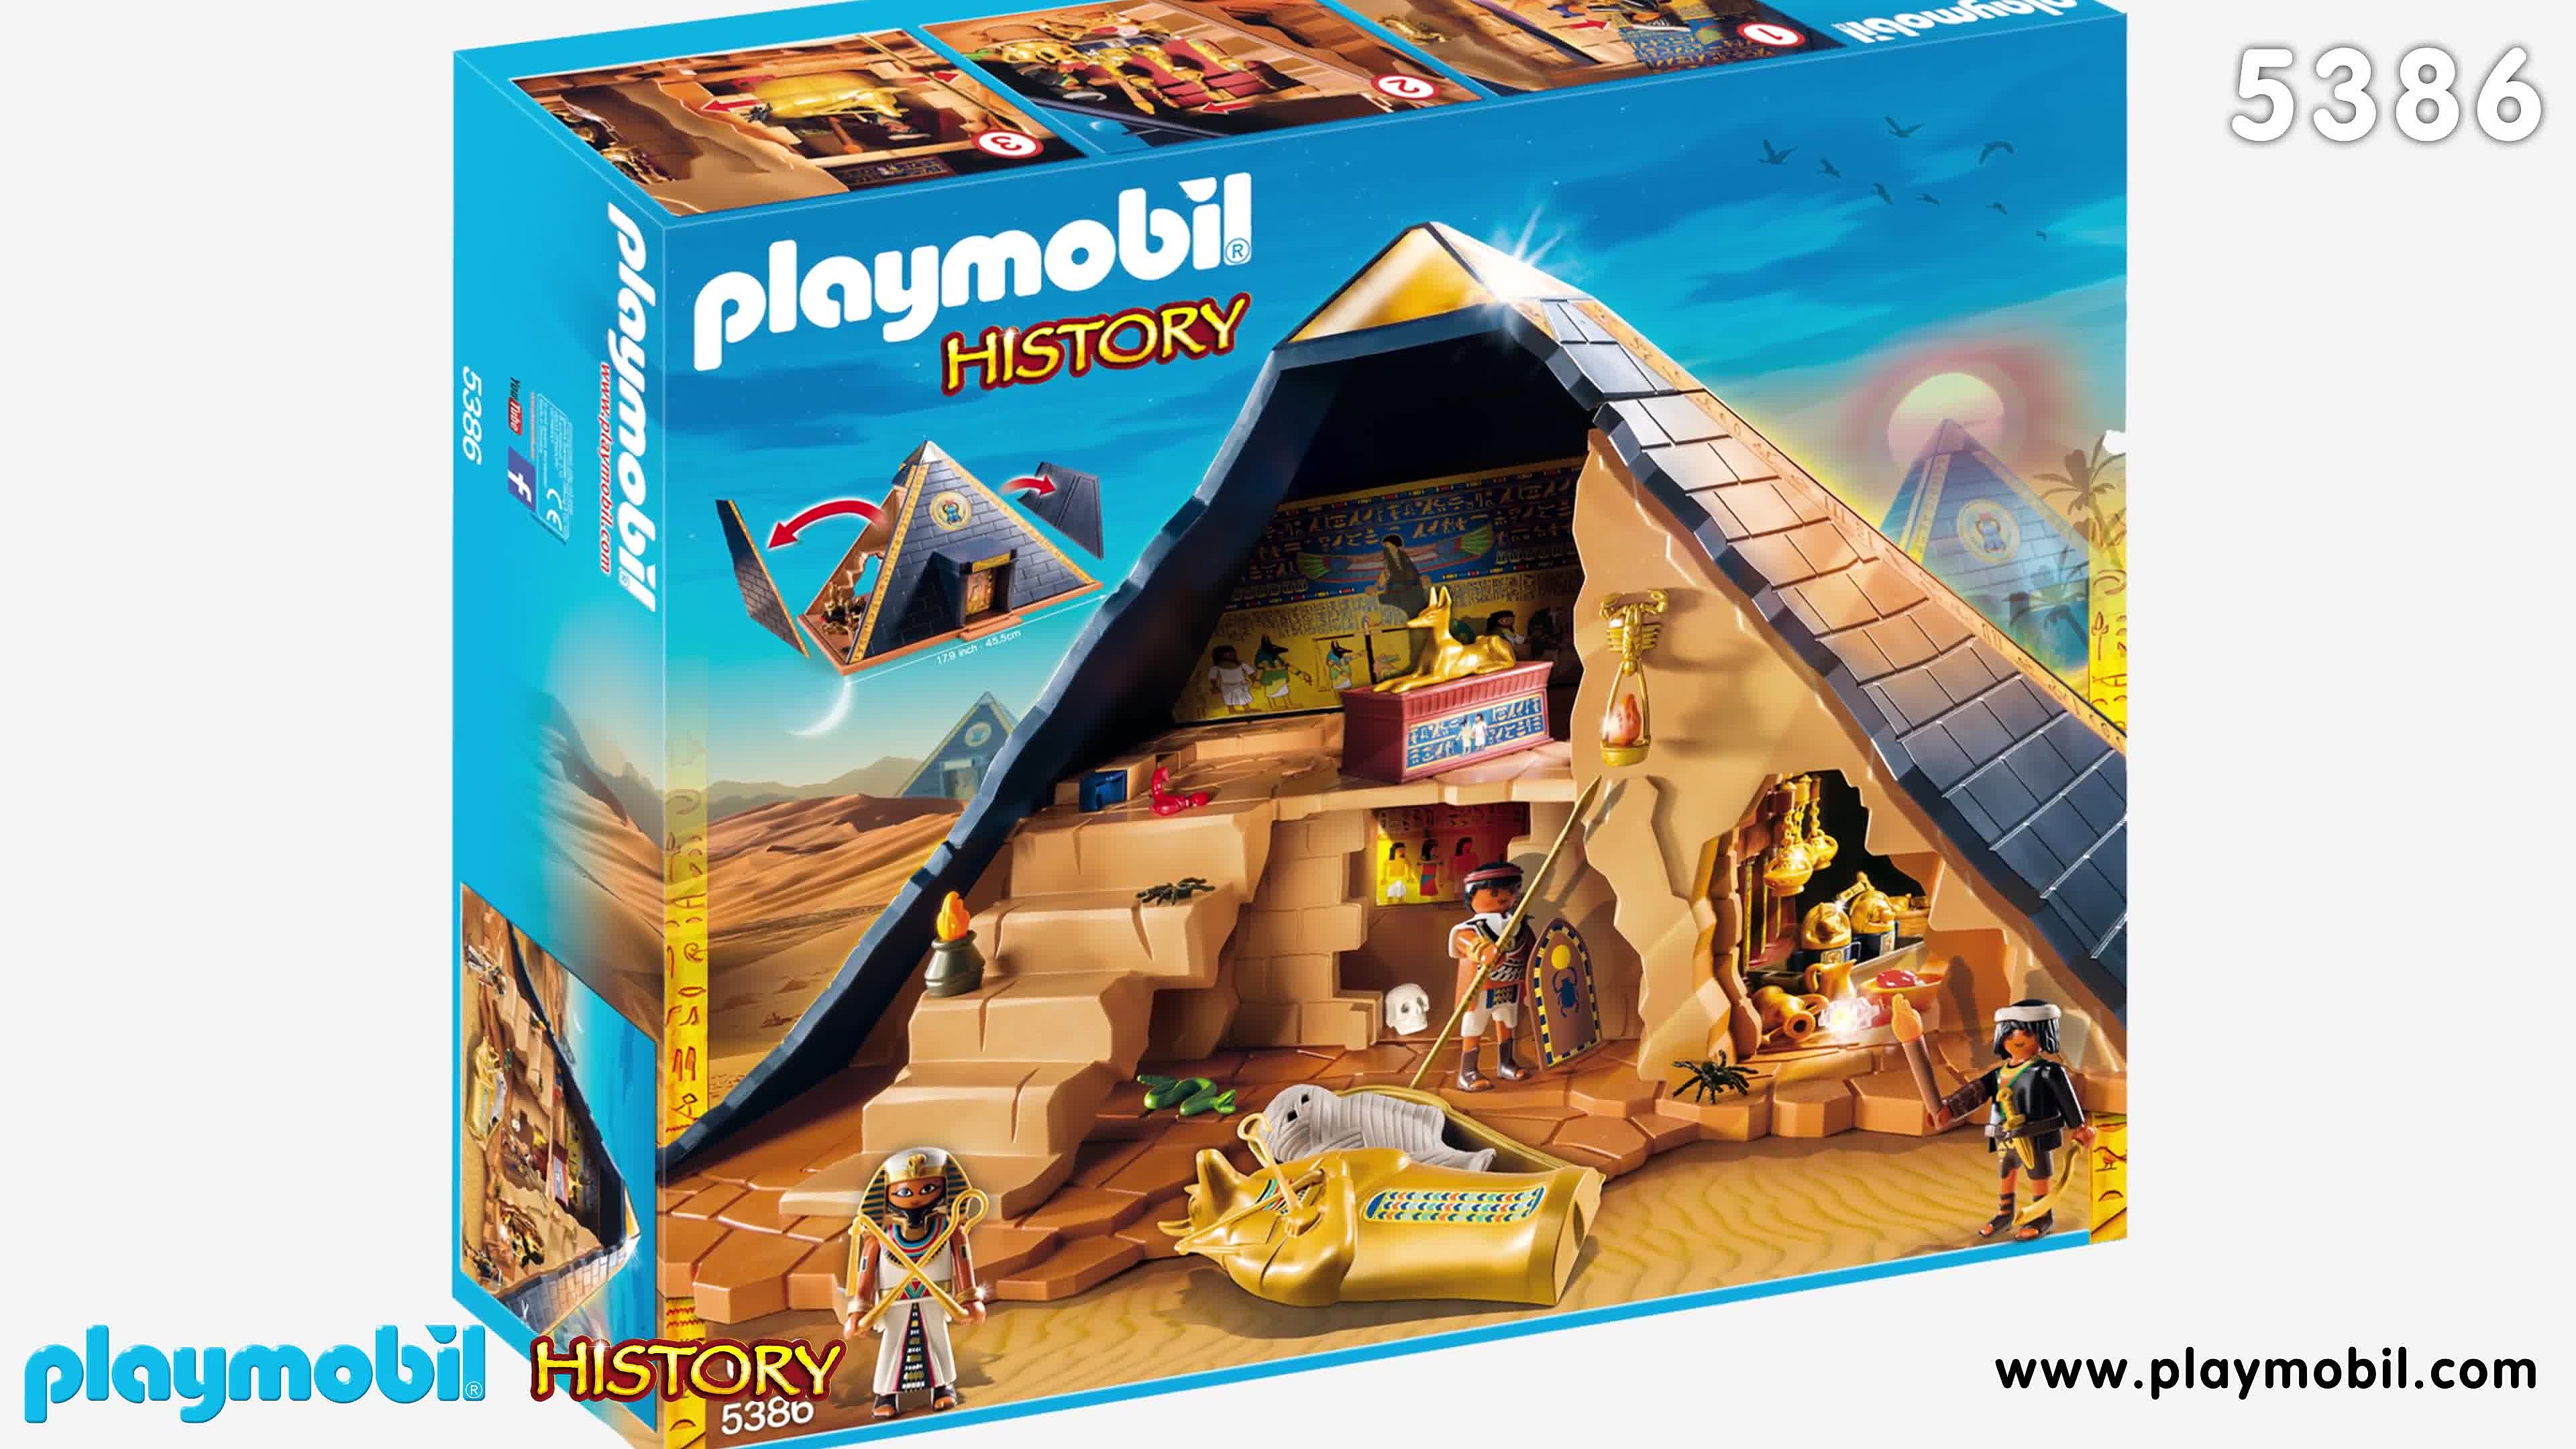 Playmobil Pharoah's Pyramid review! 5386 